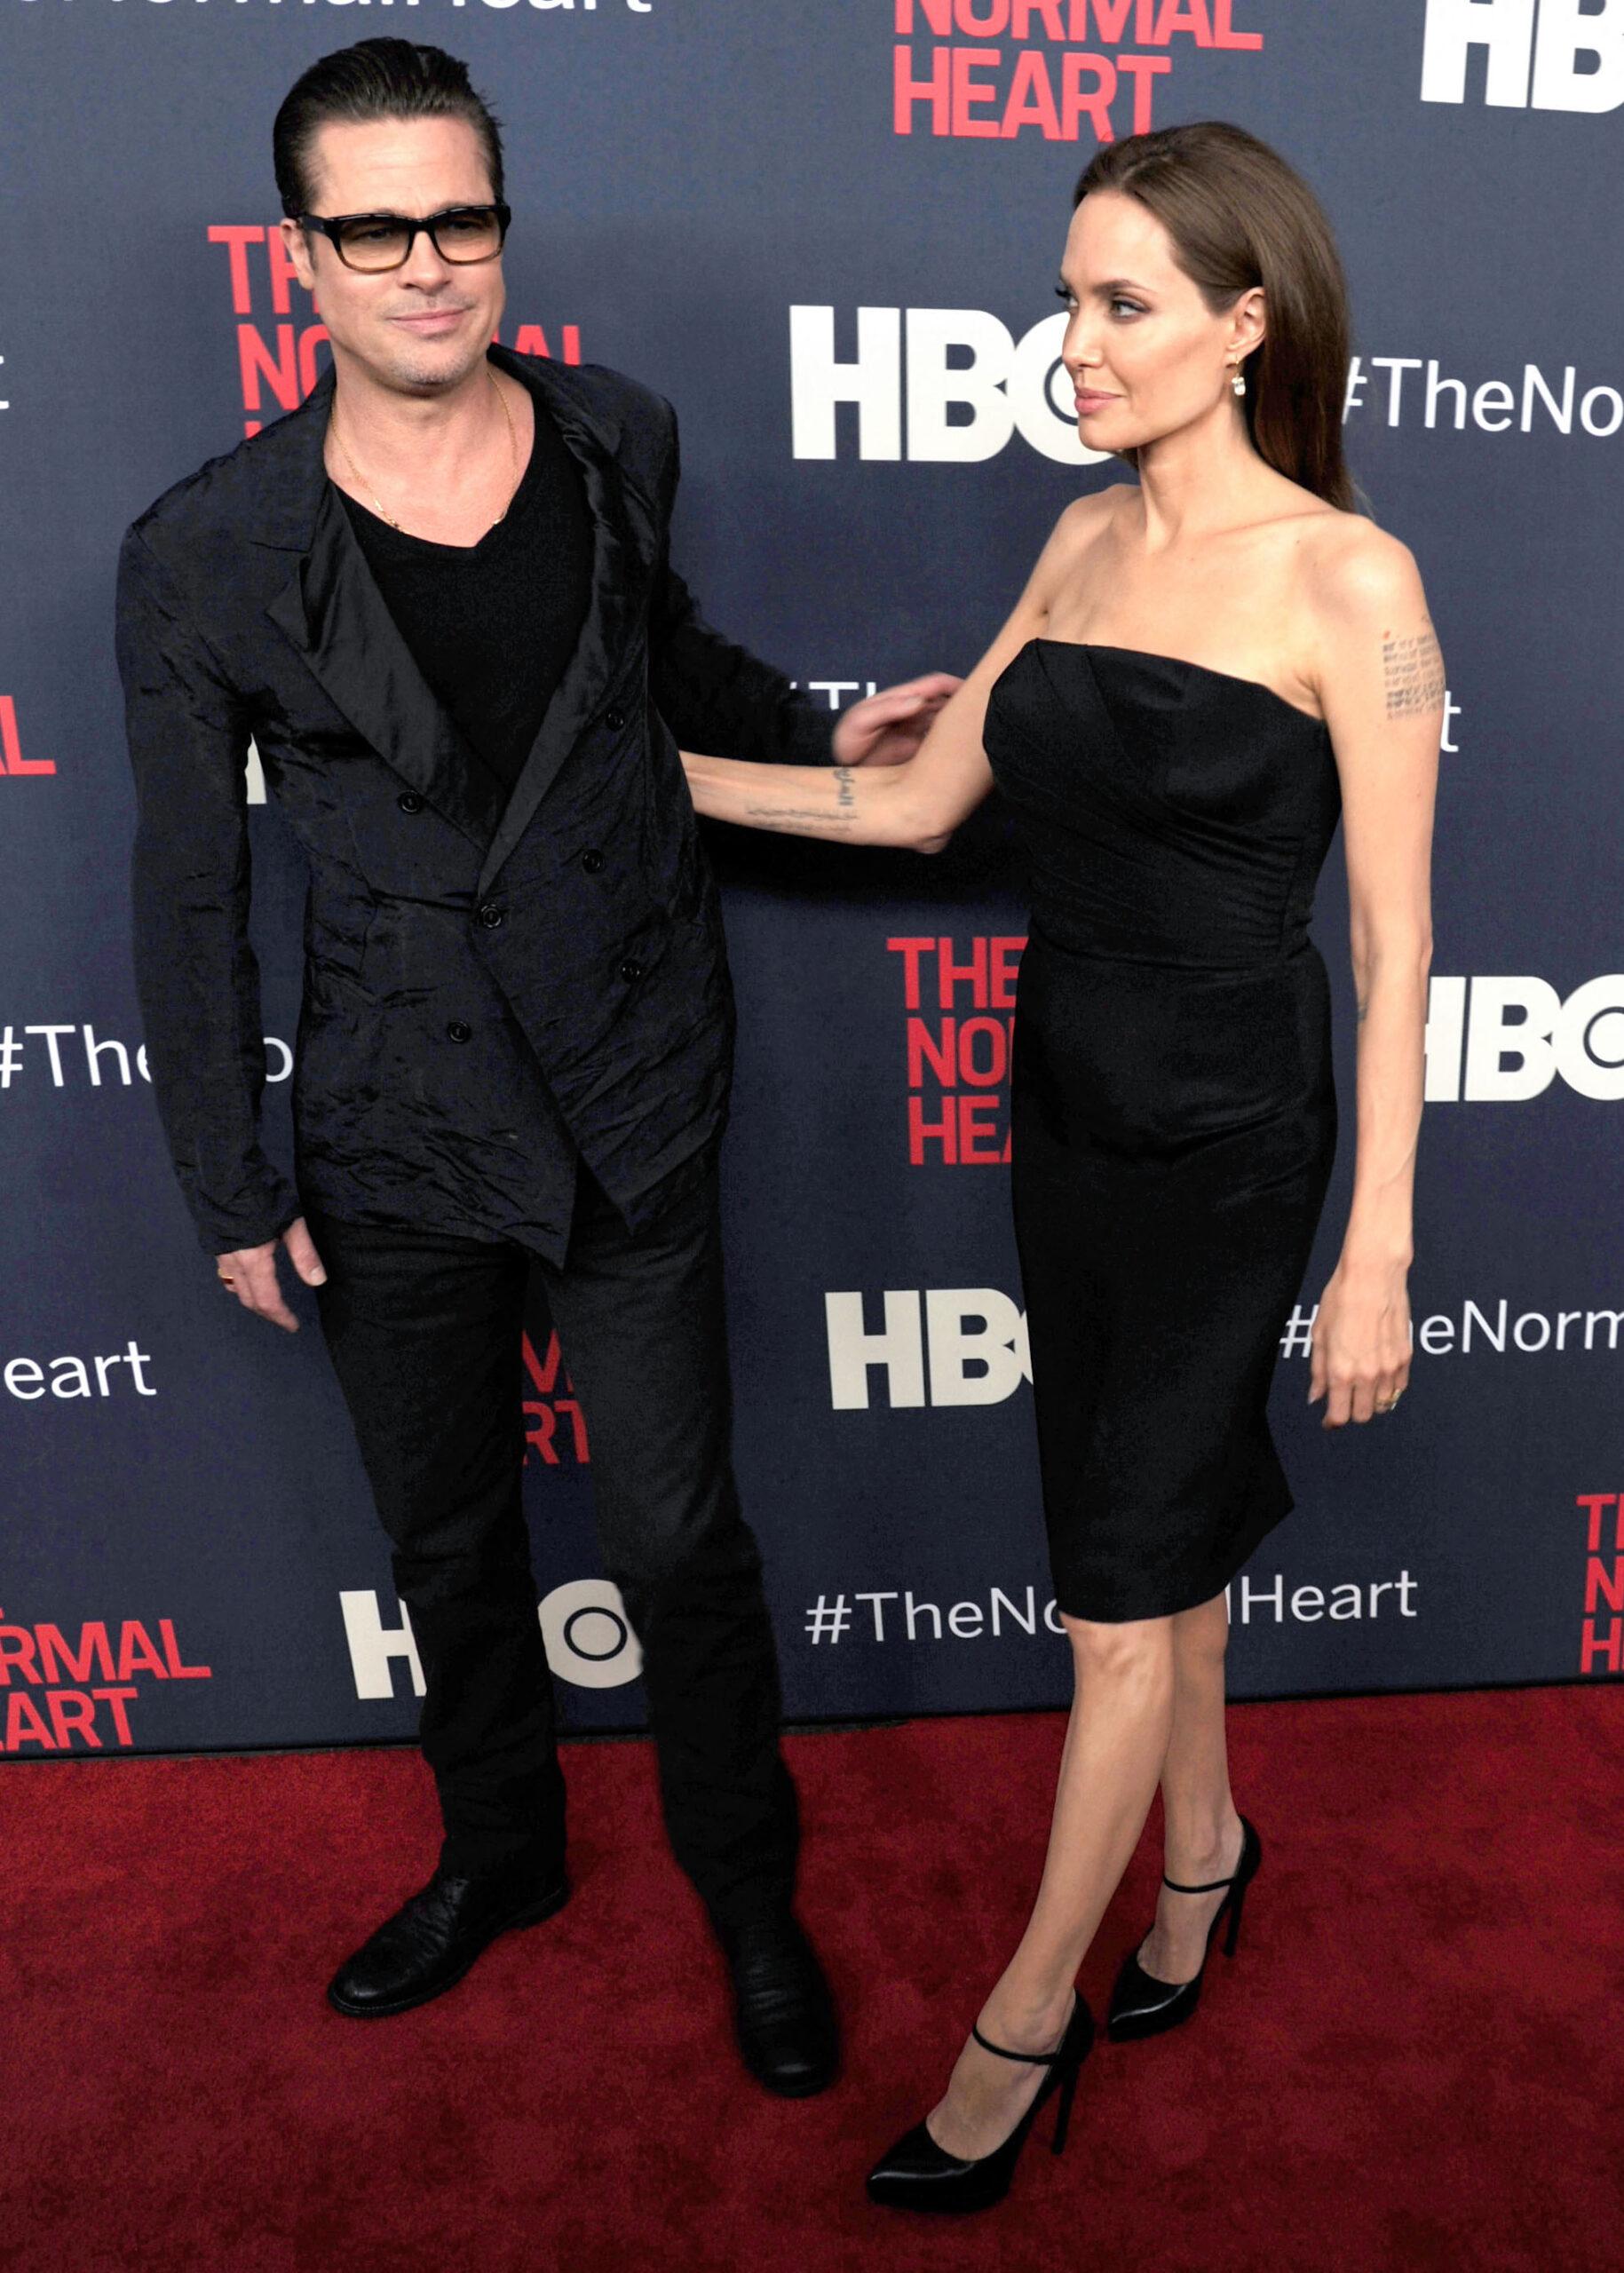 Brad Pitt, Angelina Jolie at an event